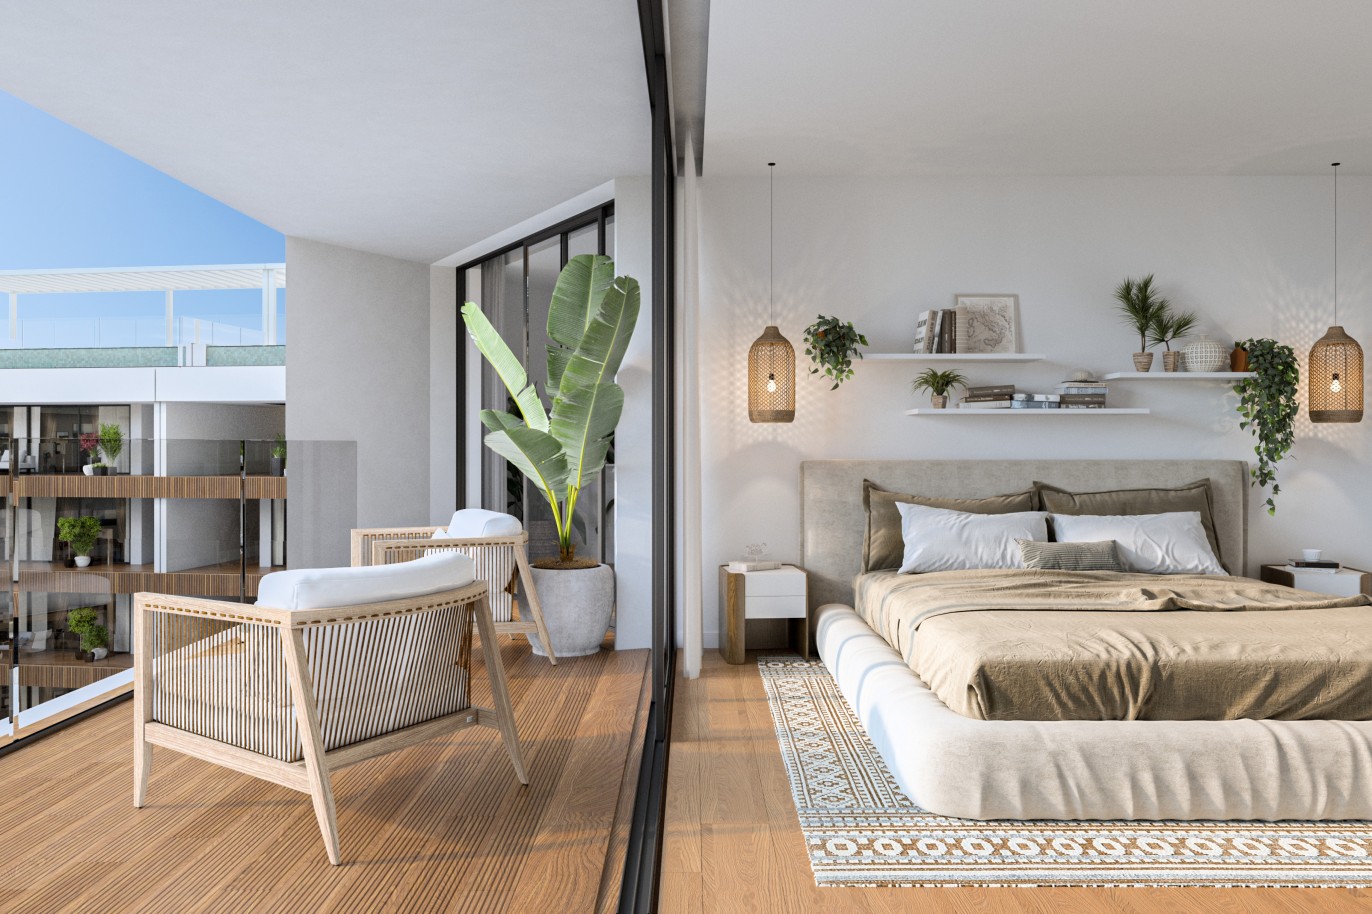 Appartements neufs avec vue sur mer, 1, 2 & 3 chambres, à vendre à Olhão, Algarve_244373